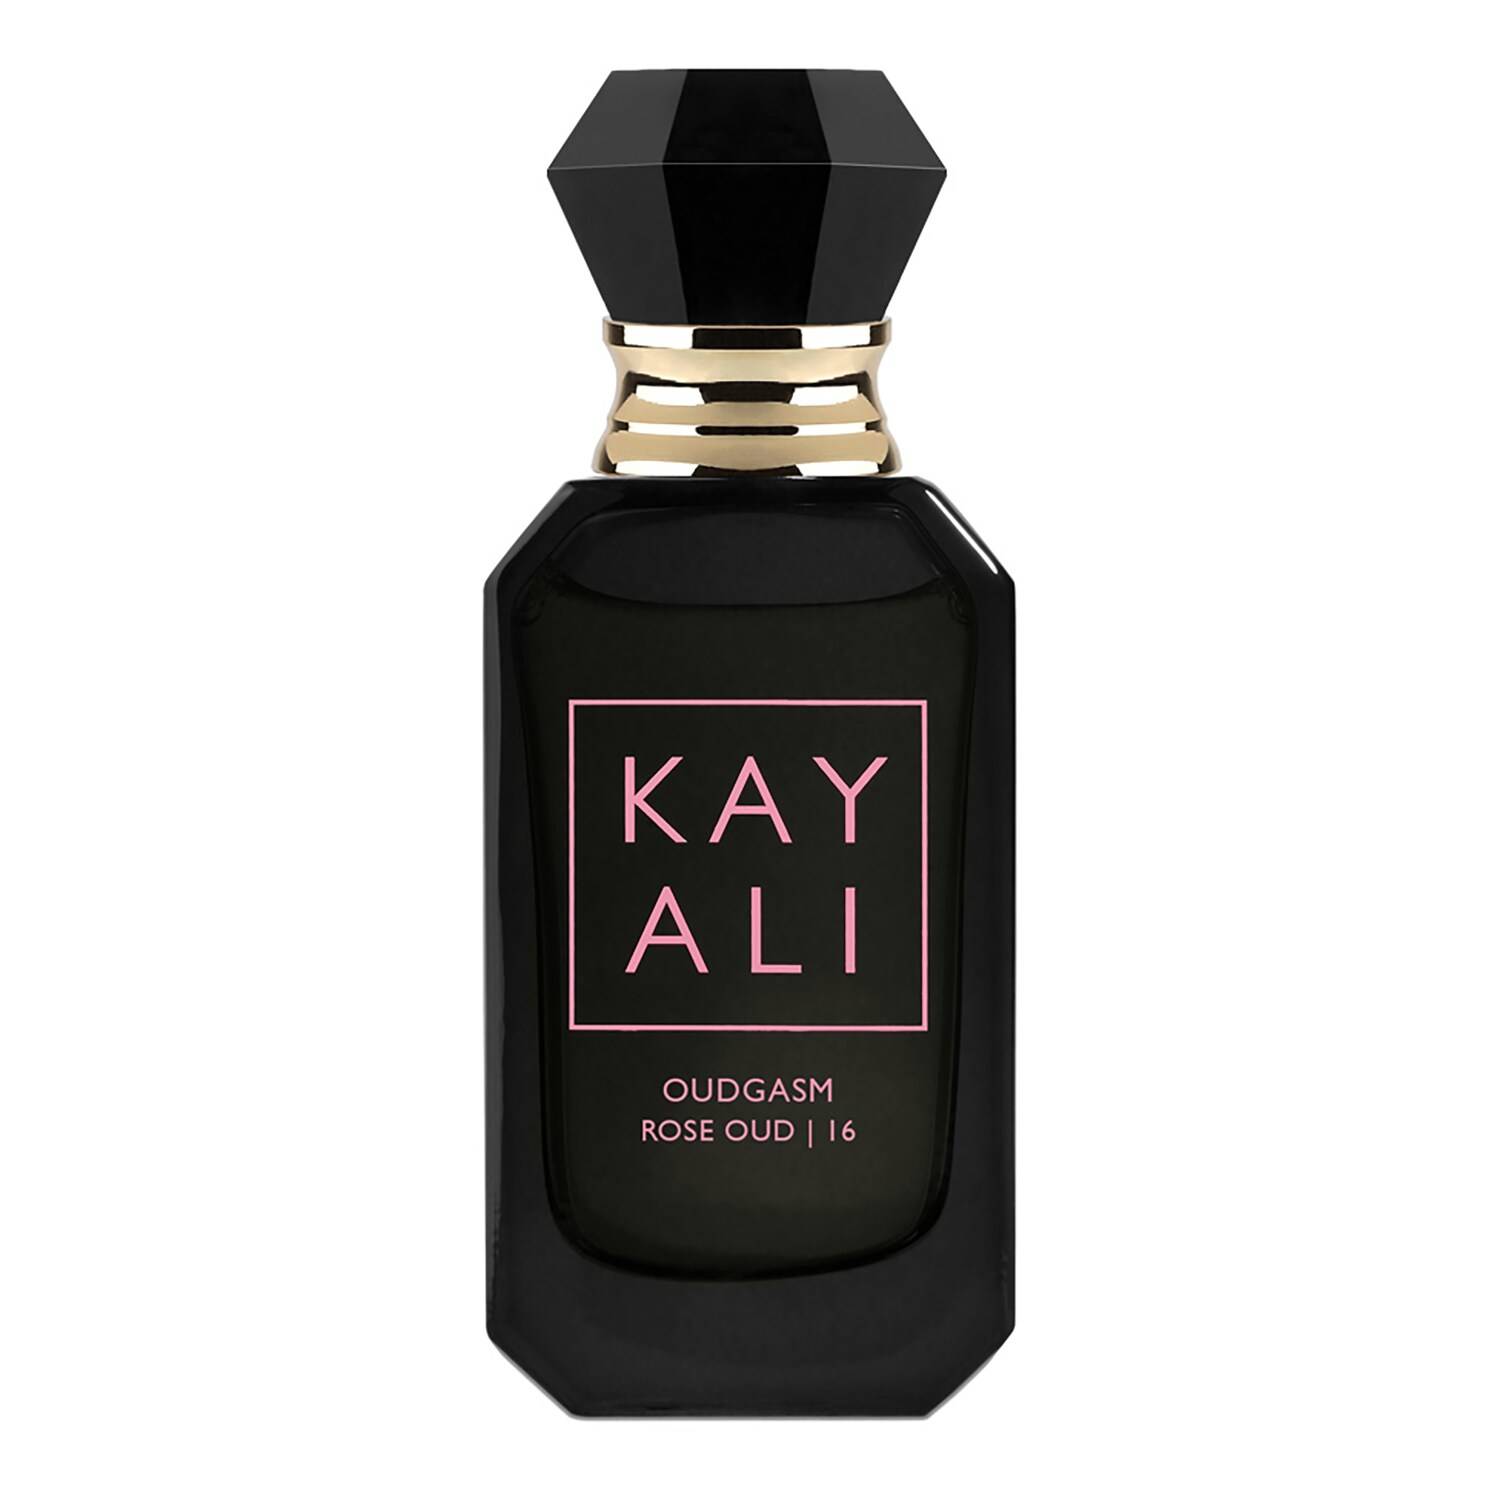 Kayali Oudgasm Rose Oud - 16 Eau De Parfum Intense 10Ml